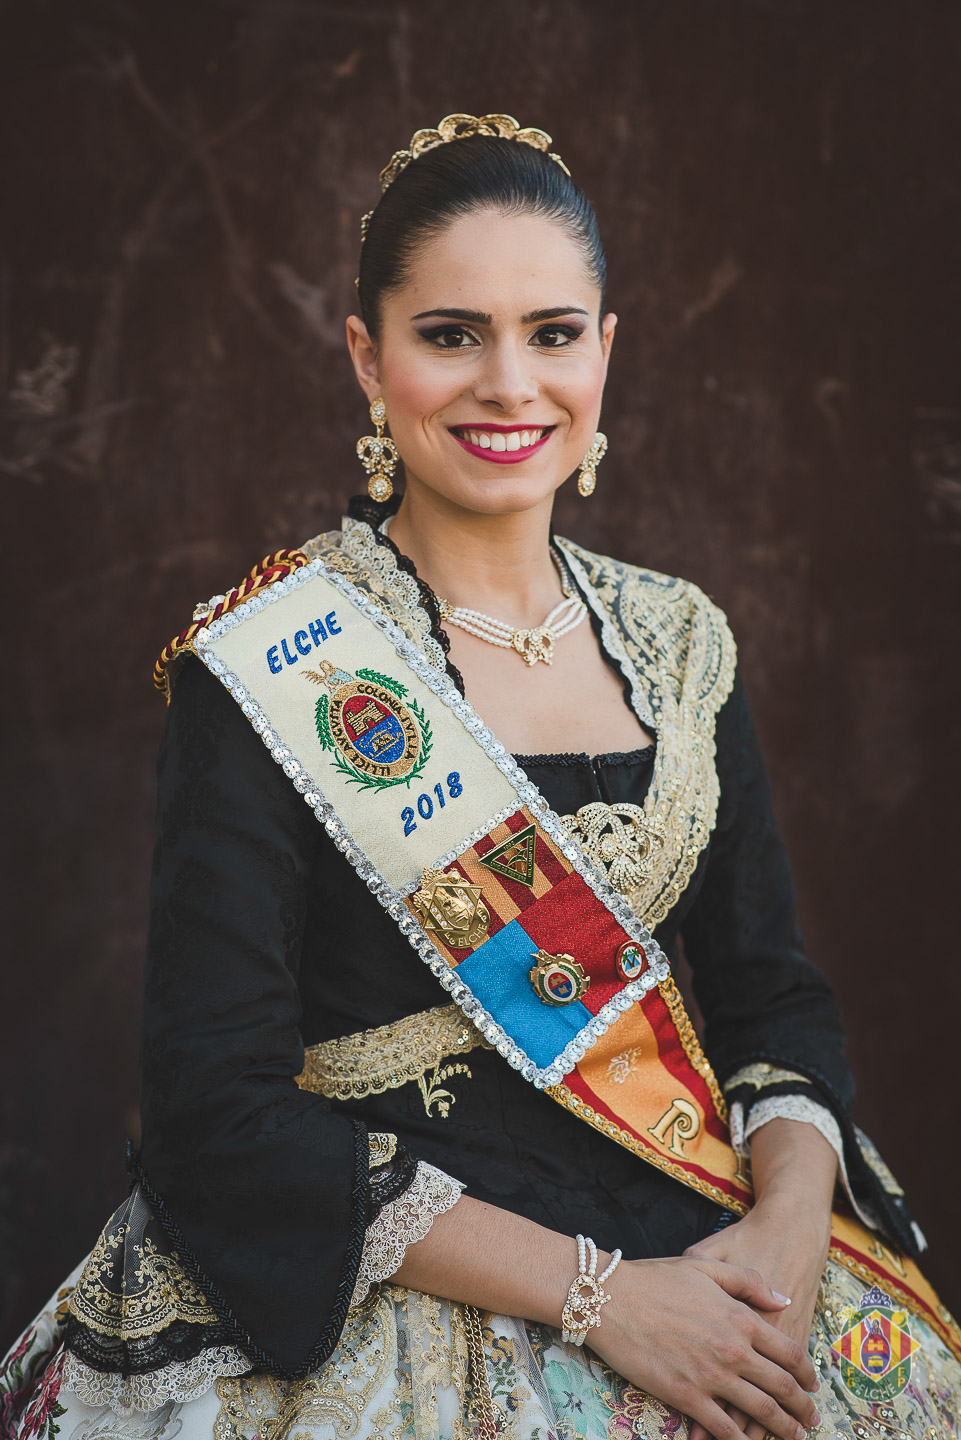 Esther Durá Martínez